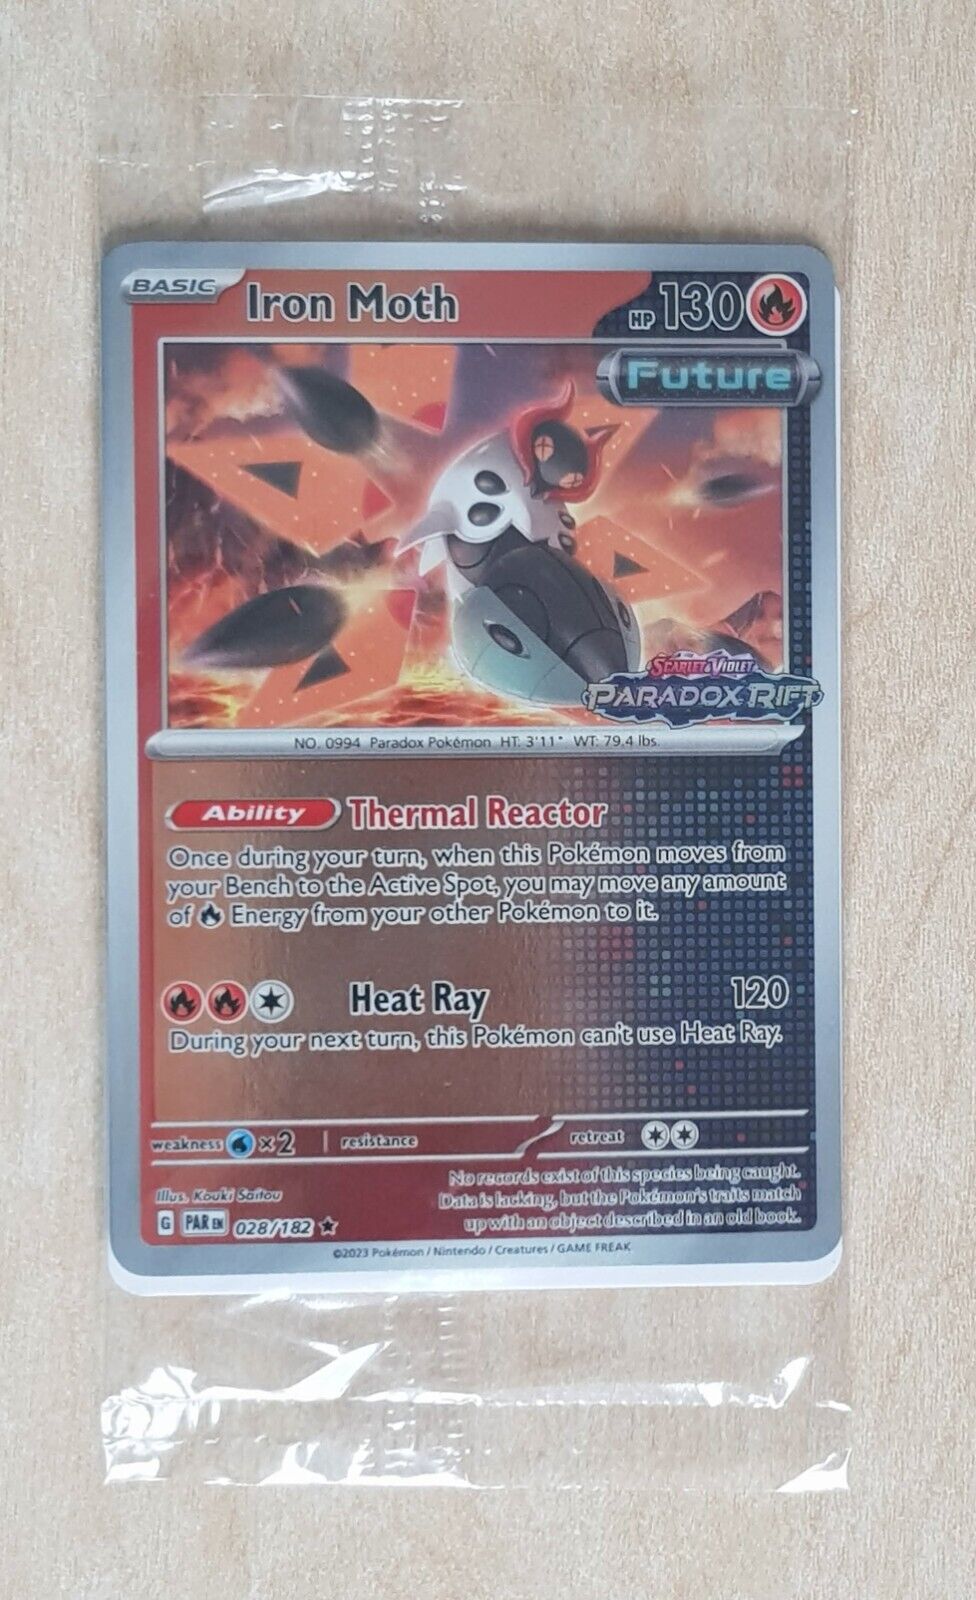 Iron Moth 028/182 Paradox Rift - Stamped Sealed Pokemon Promo Card